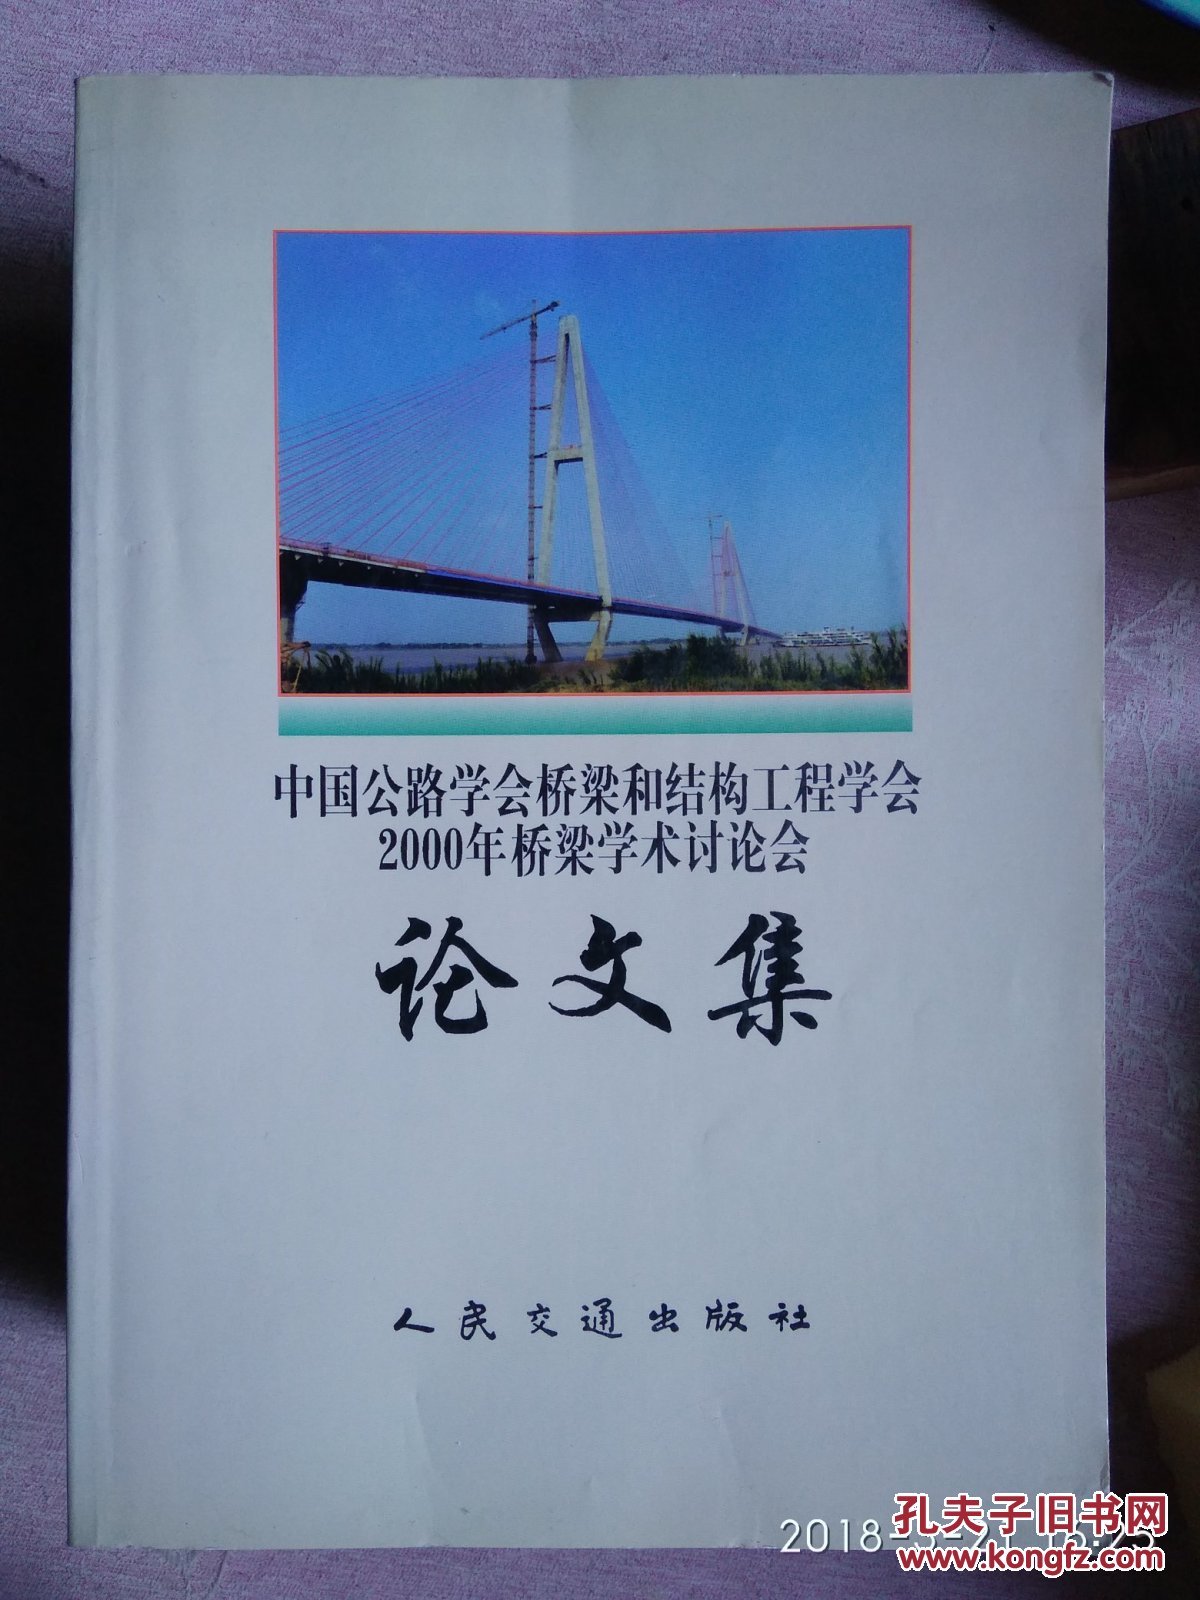 包邮 中国公路学会桥梁和结构工程学会 2000年 全国桥梁学术讨论会论文集